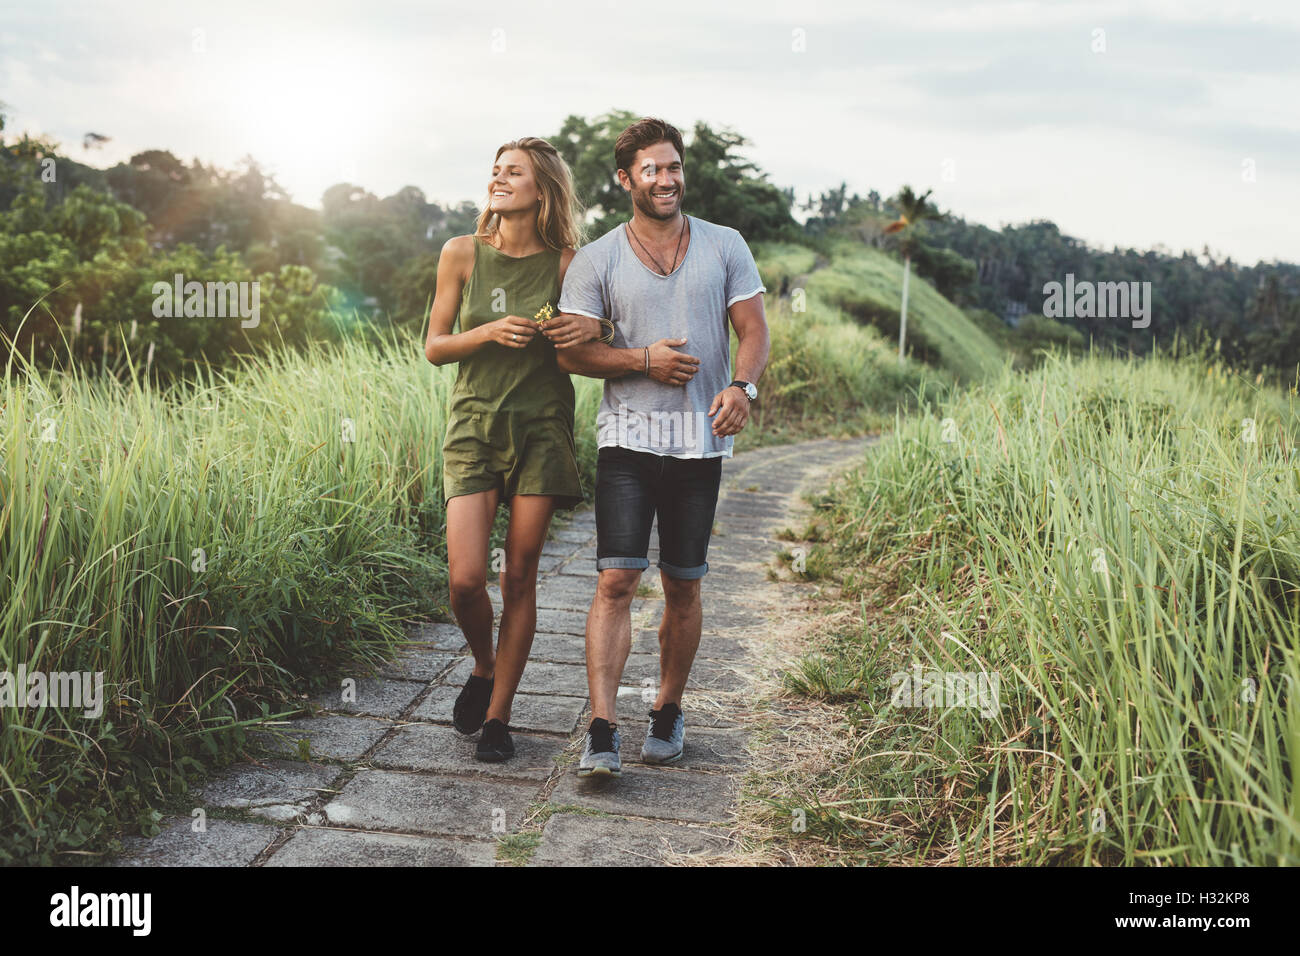 Disparó al aire libre de pareja joven en amor caminando en el camino a través del campo de hierba. Un hombre y una mujer caminando por el pasto alto campo. Foto de stock